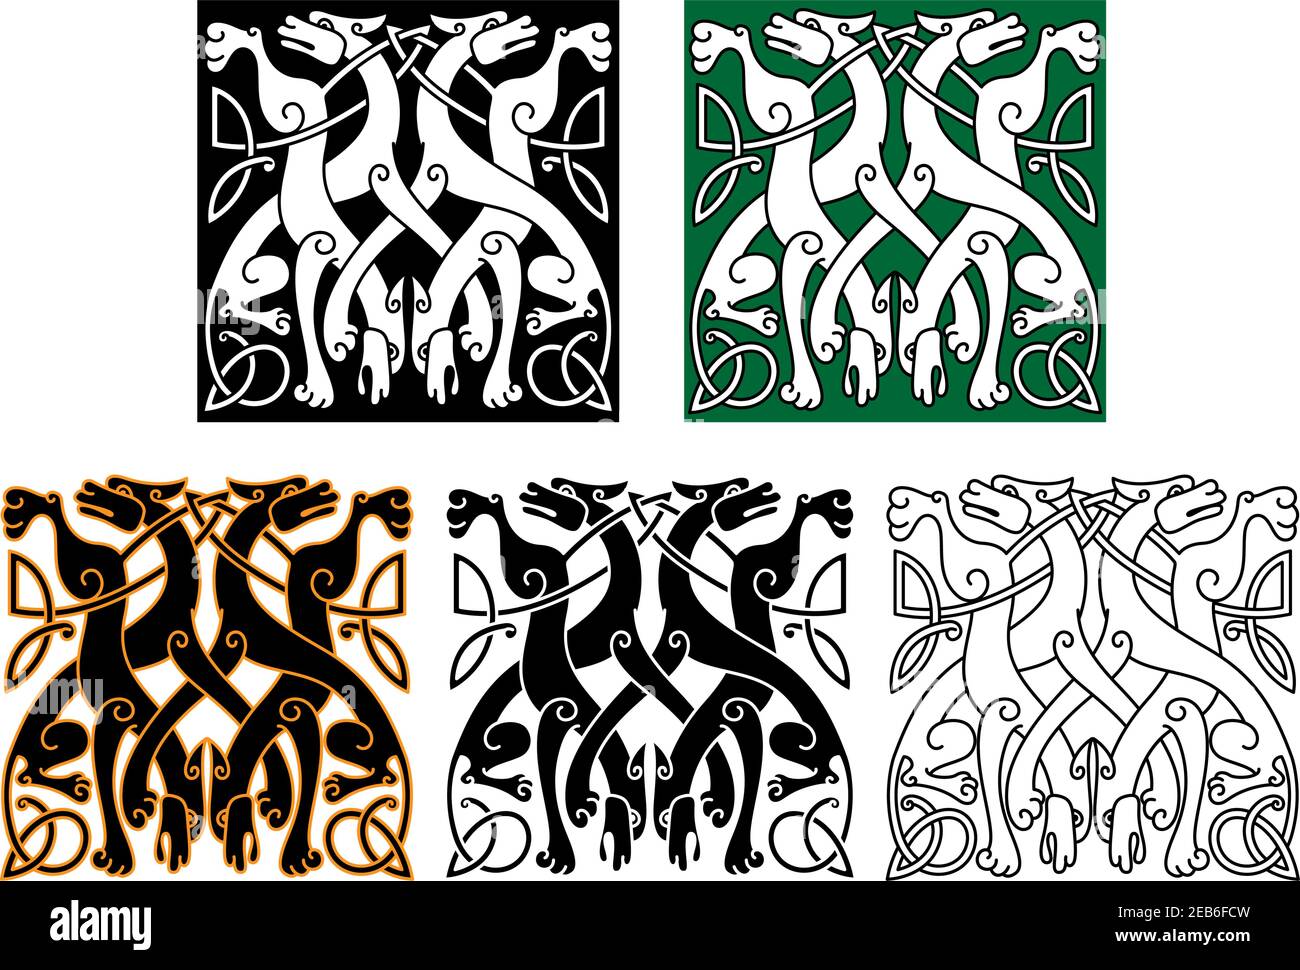 Vintage Tiermuster mit dekorativen Wölfen verflochten Schwänze und Beine, geschmückt mit keltischen Knoten ornamentalen Elementen für Tattoo oder mittelalterliche Kunst Stock Vektor